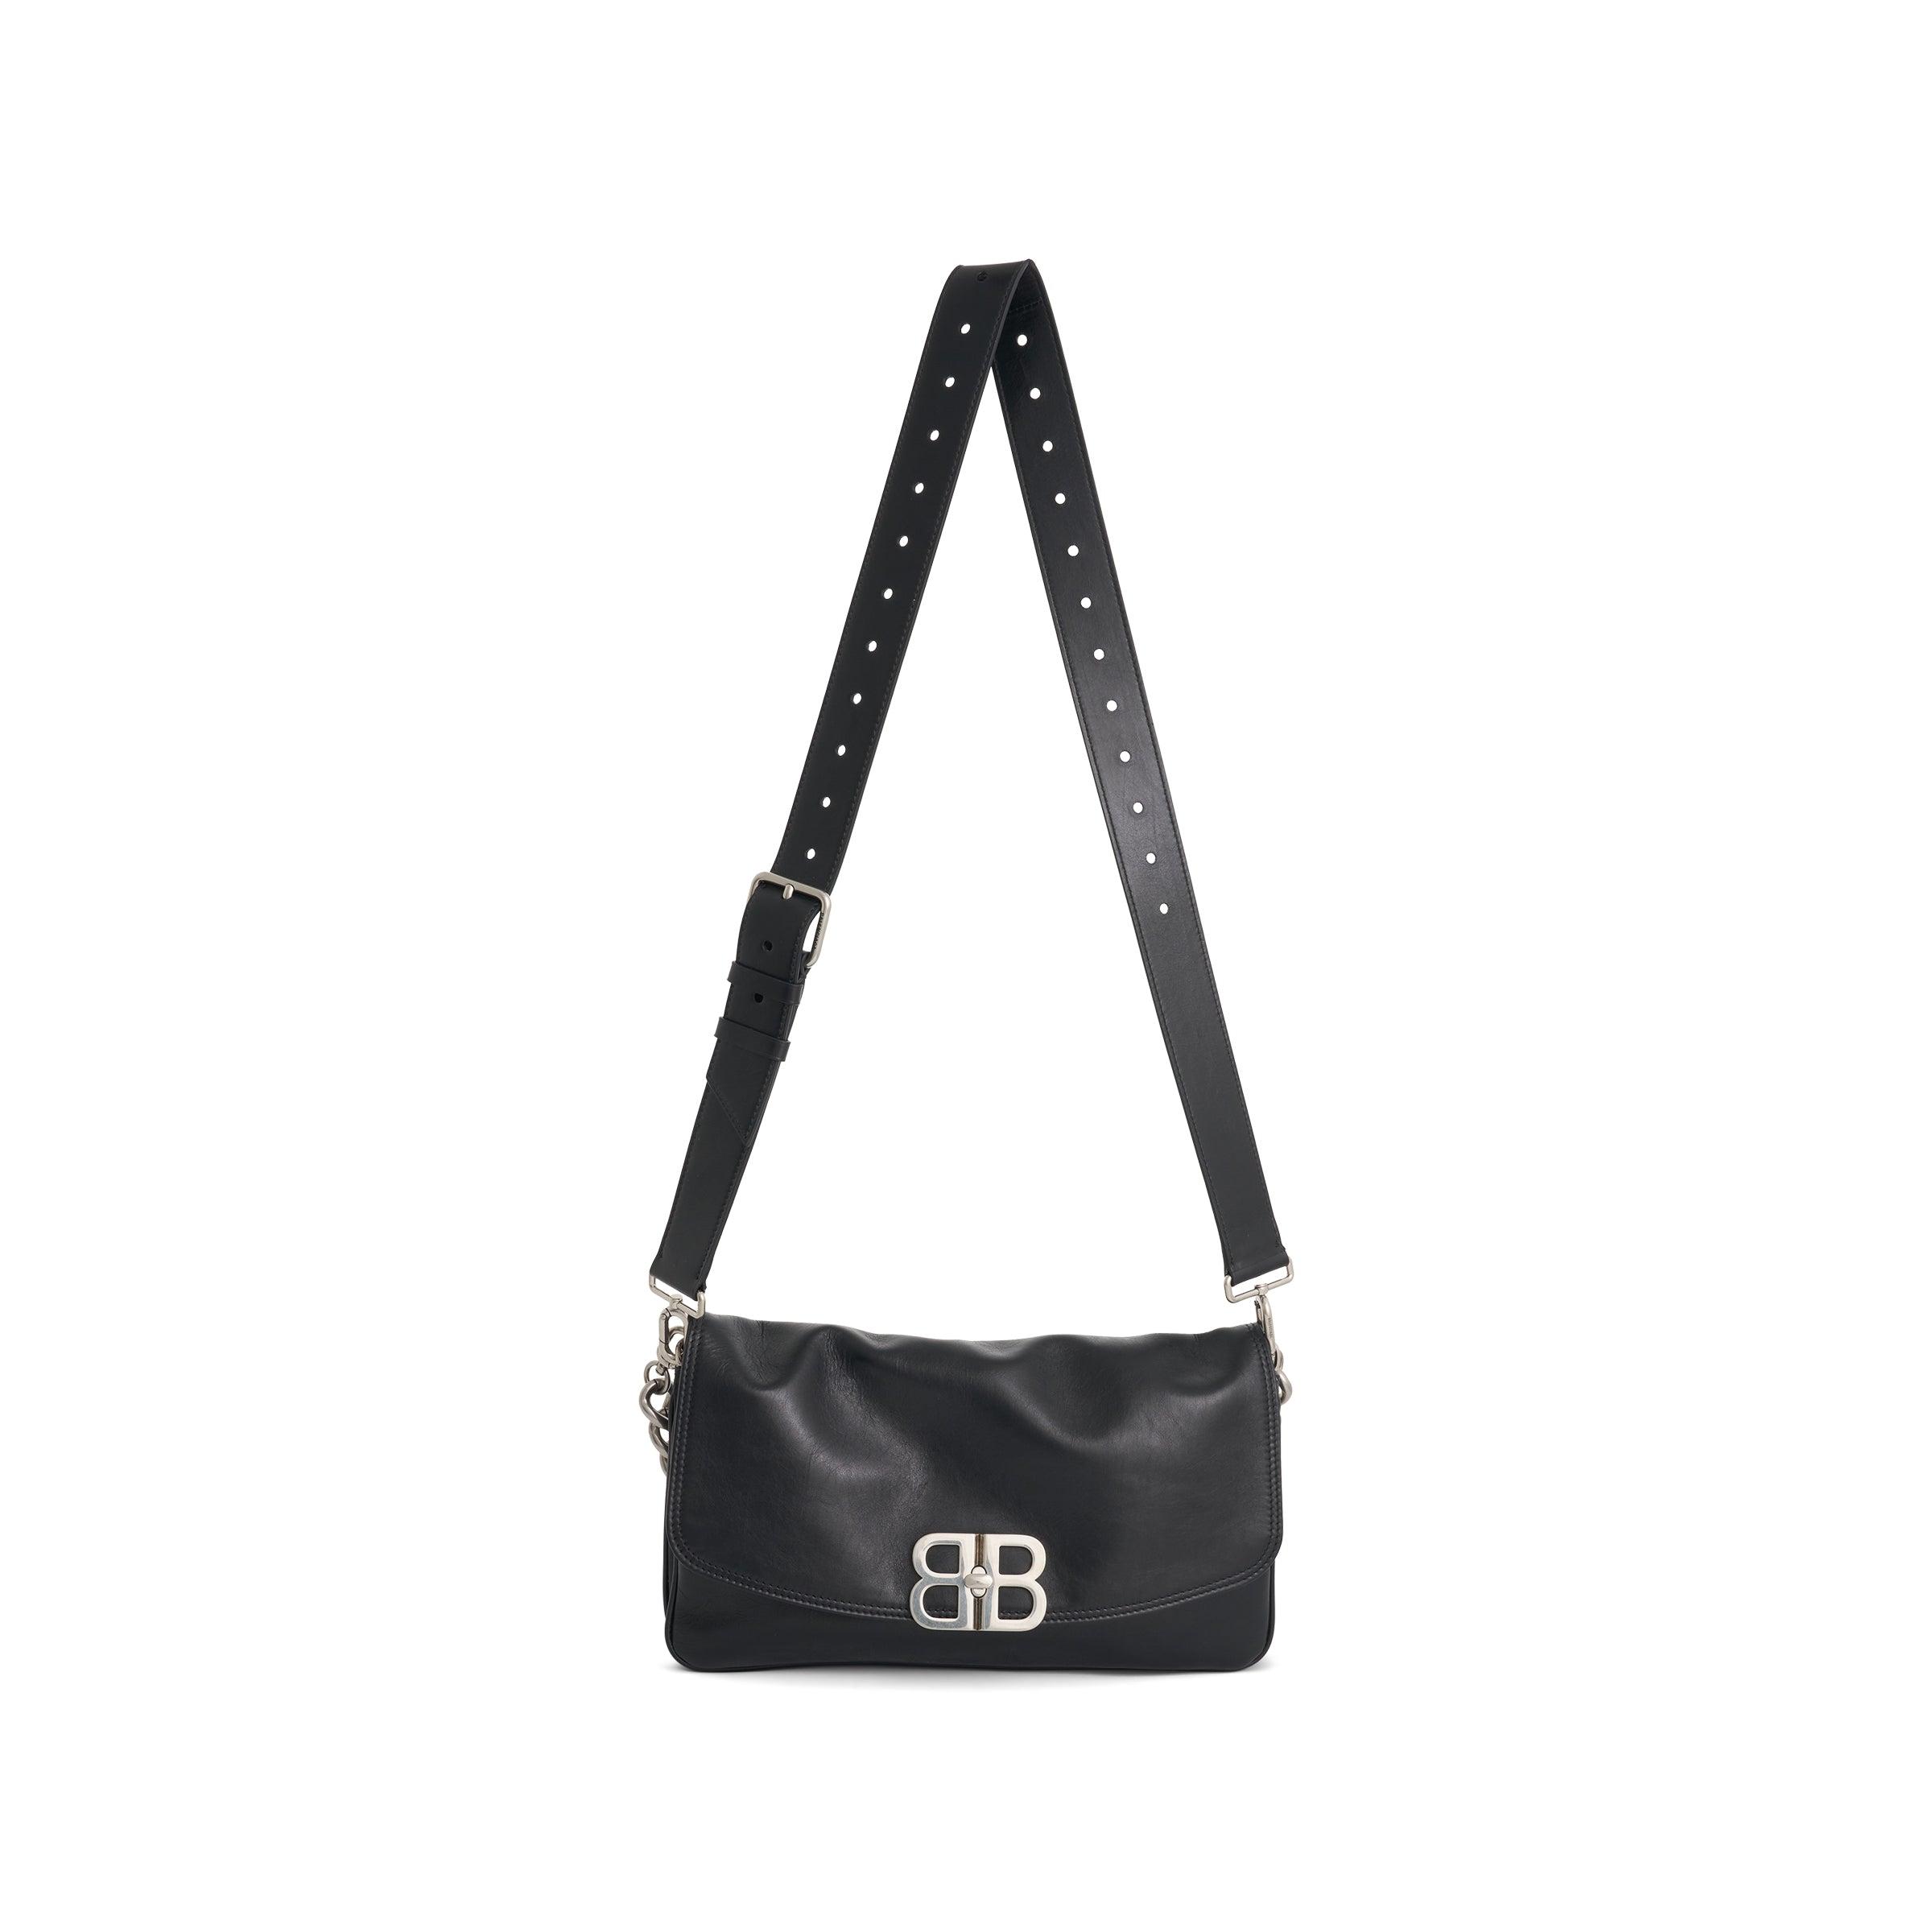 Balenciaga Flap Bb Soft Leather Crossbody Bag